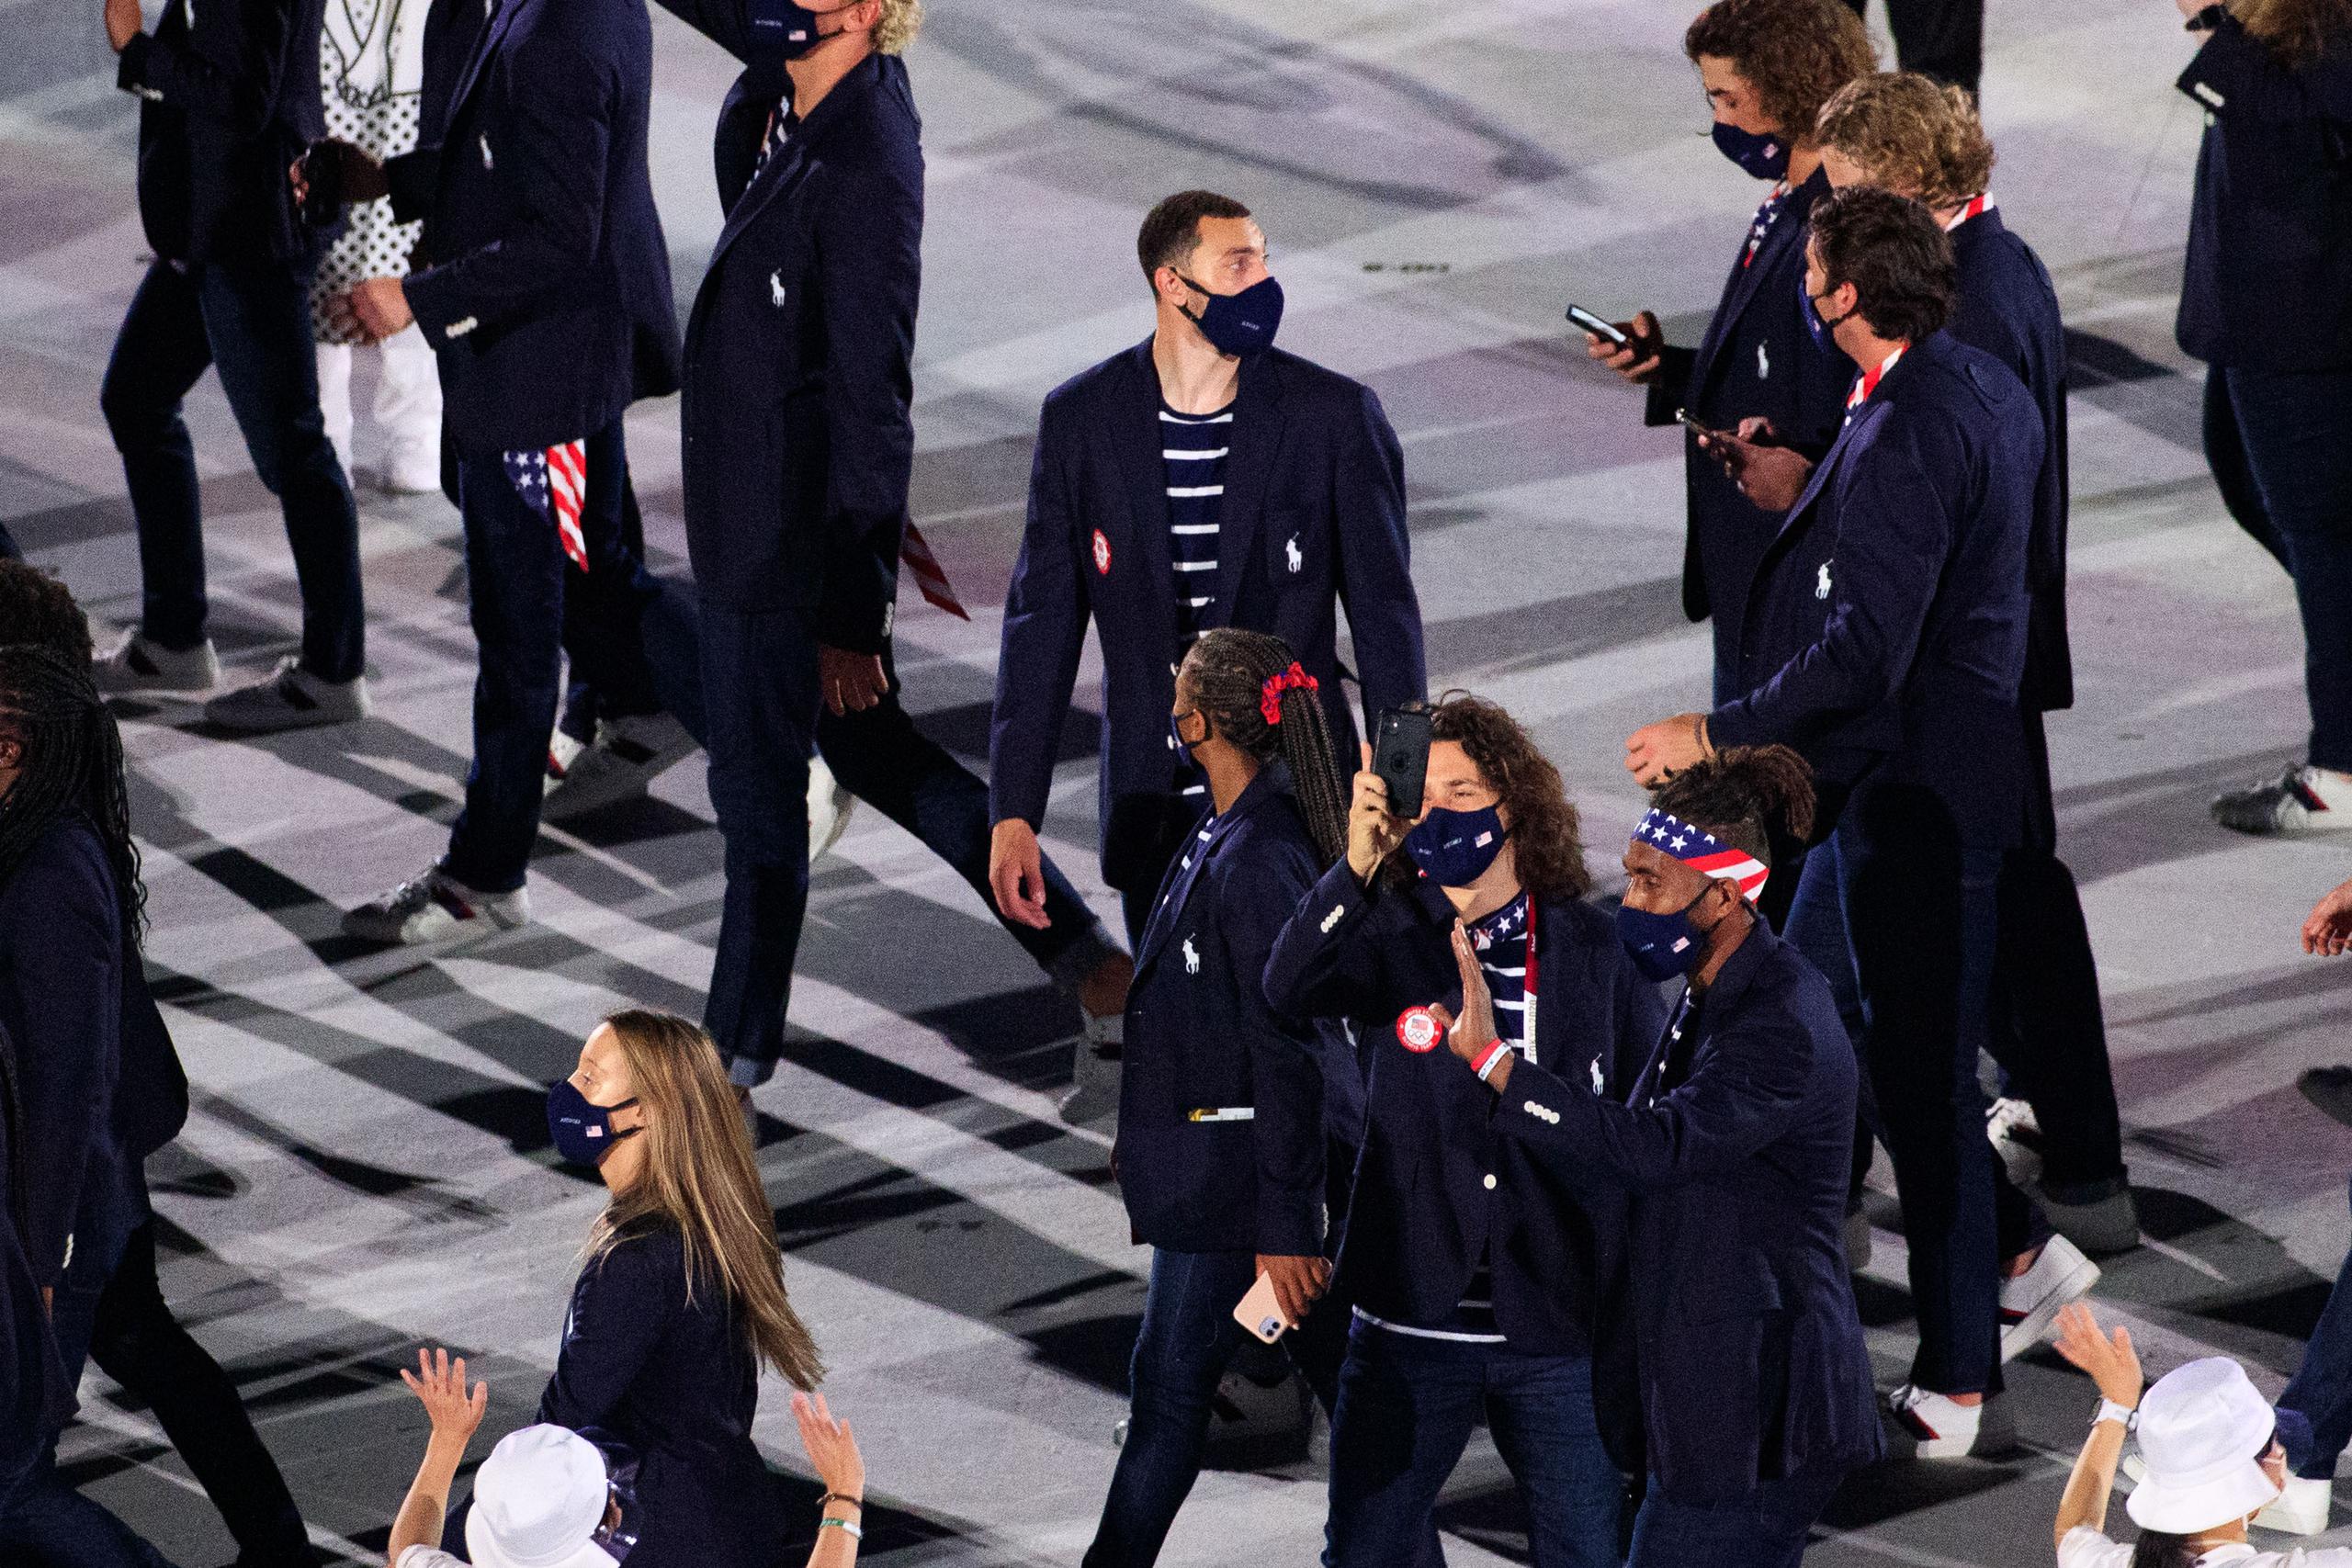 La delegación de Estados Unidos le jugó una broma al balonceslista Kevin Durant antes de comenzar el desfile.